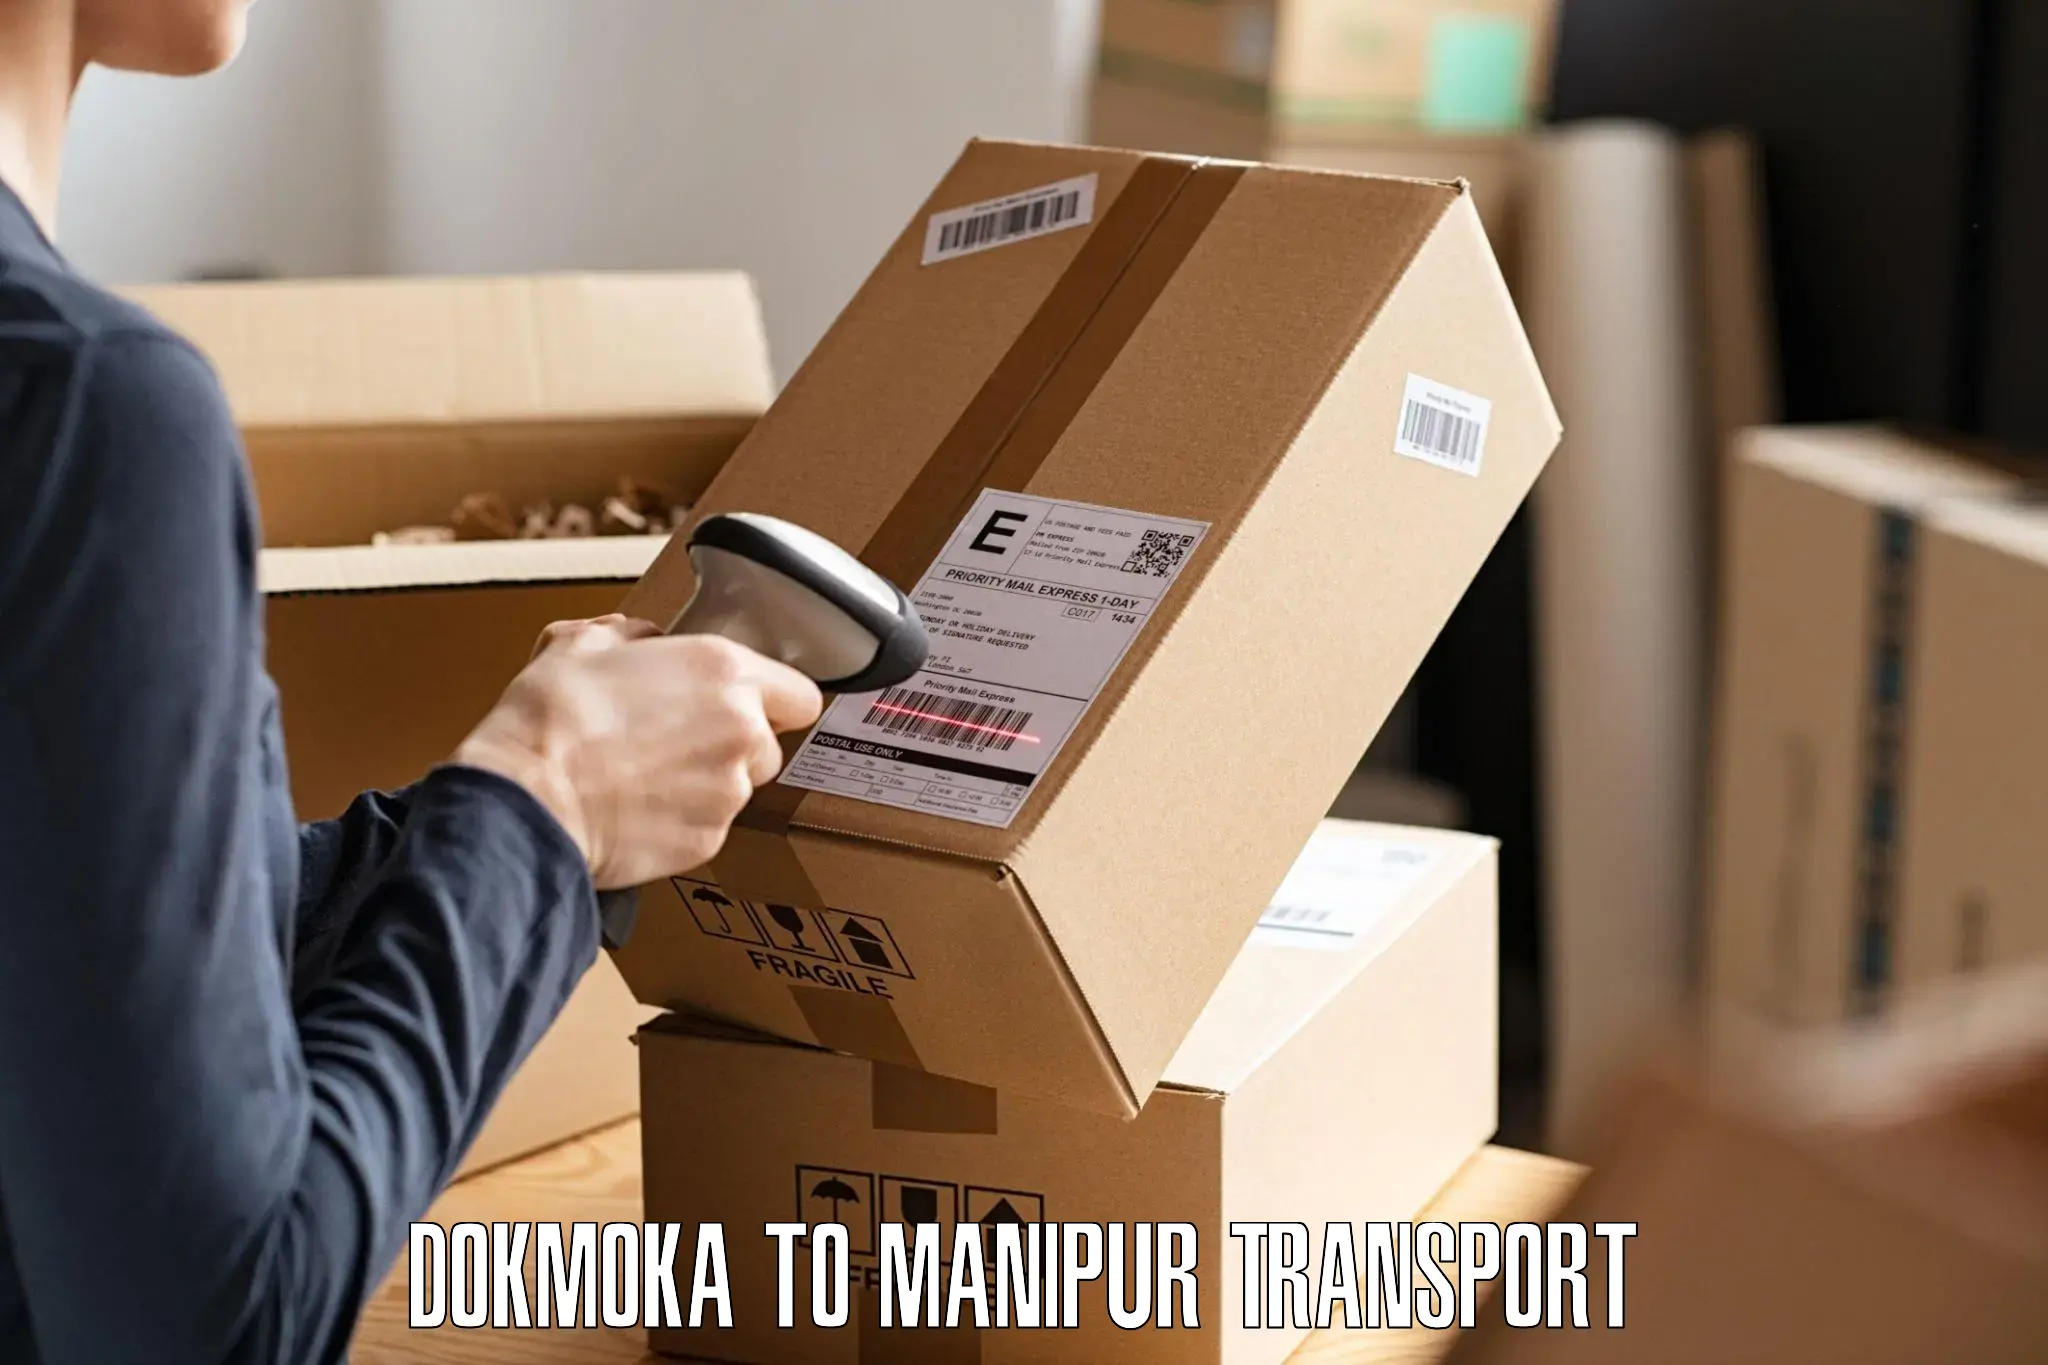 Daily transport service Dokmoka to Senapati